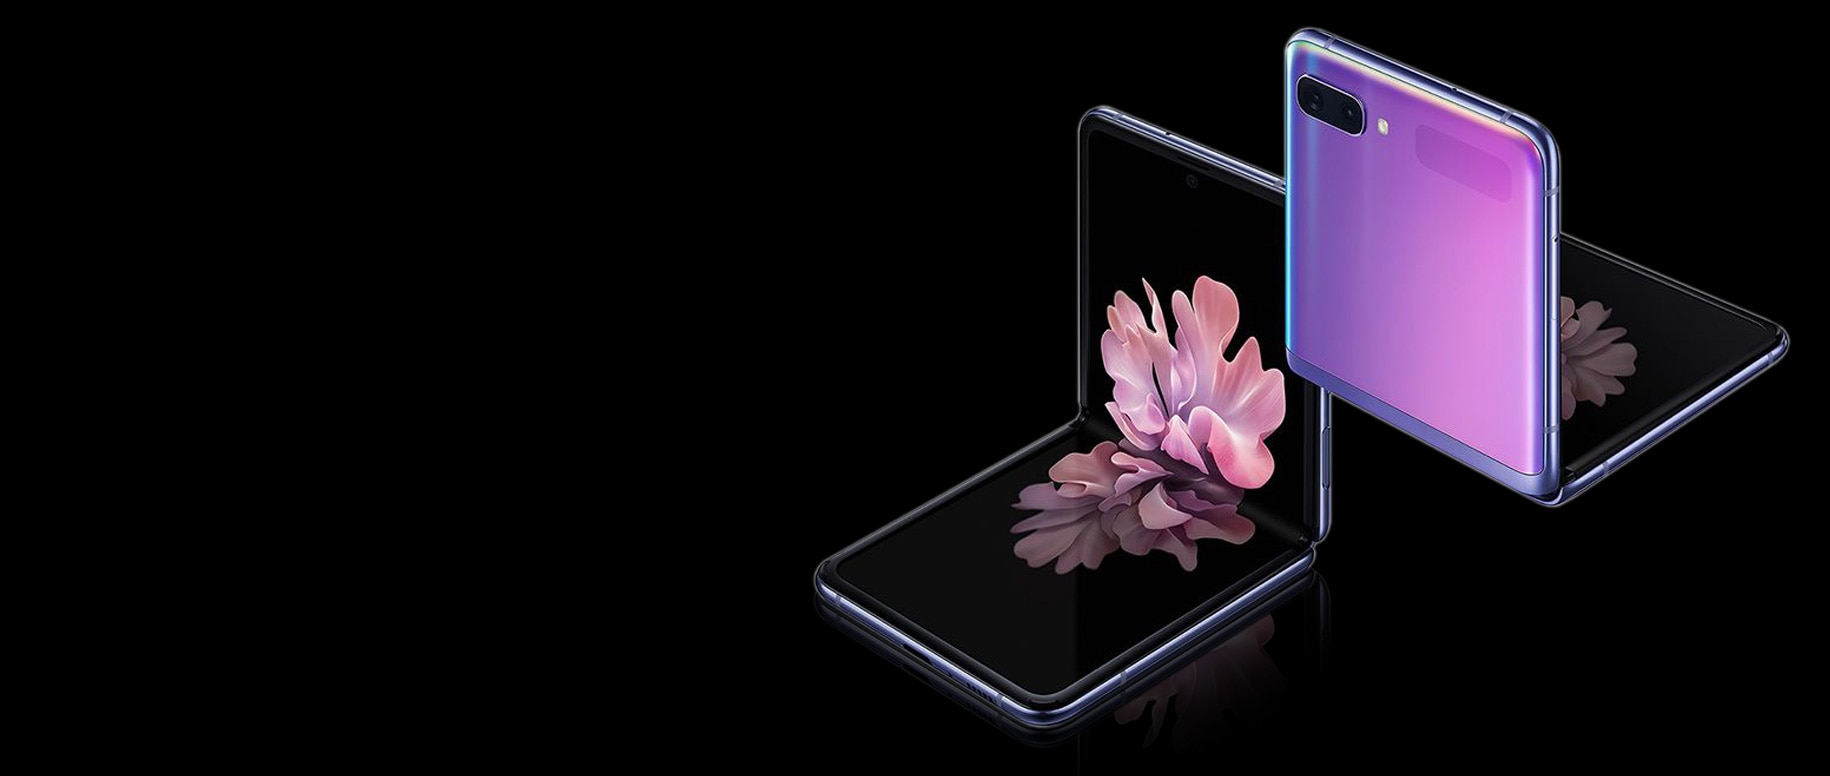 Kaks Galaxy Z Flip telefoni, mis on kolmveerandnurga all Mirror Purple, üks eest ja teine ​​tagant vaadatuna. Mõlemad on freestop voltimisega täisnurga all volditud. Eestvaates on ekraanil õitsev lilletapeet